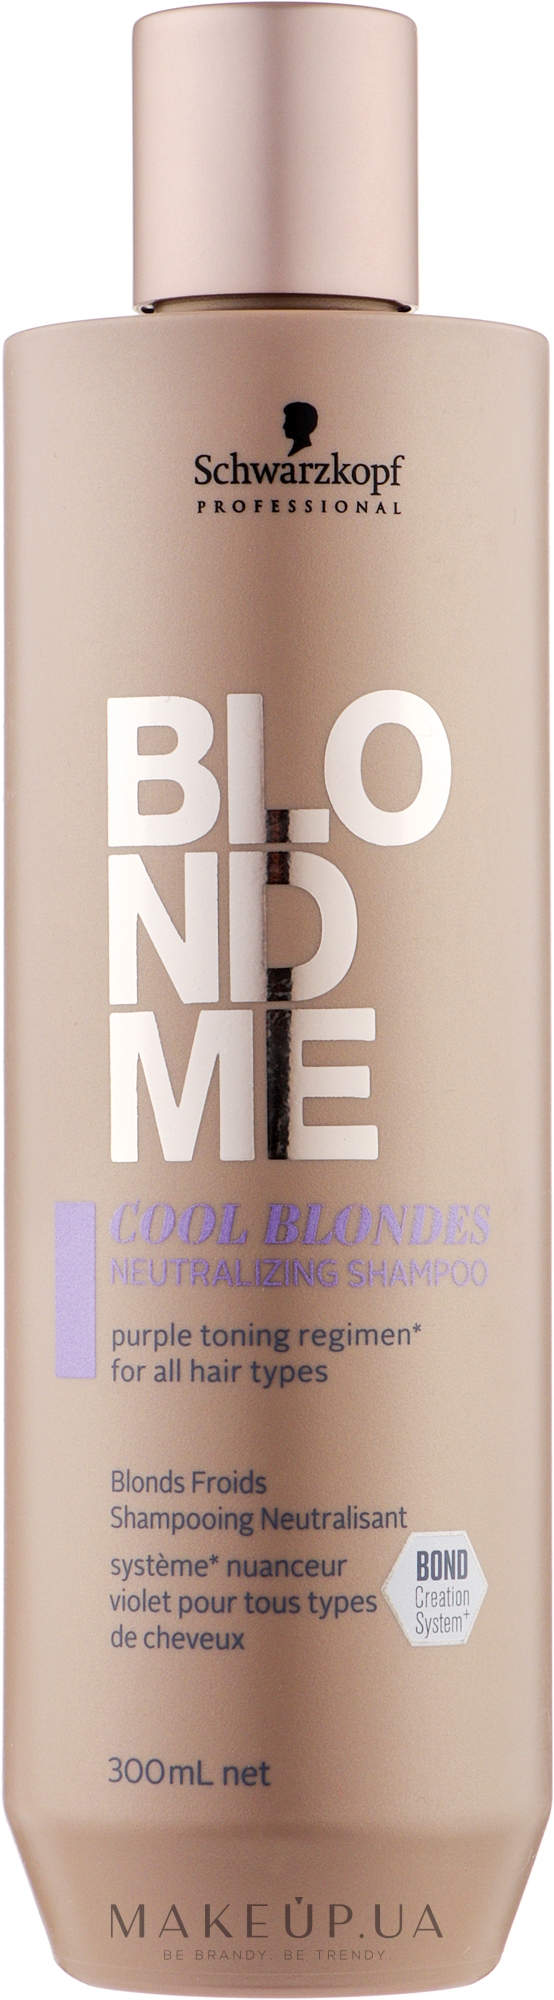 Нейтрализующий шампунь для волос холодных оттенков блонд - Schwarzkopf Professional BlondMe Cool Blondes Neutralizing Shampoo — фото 300ml